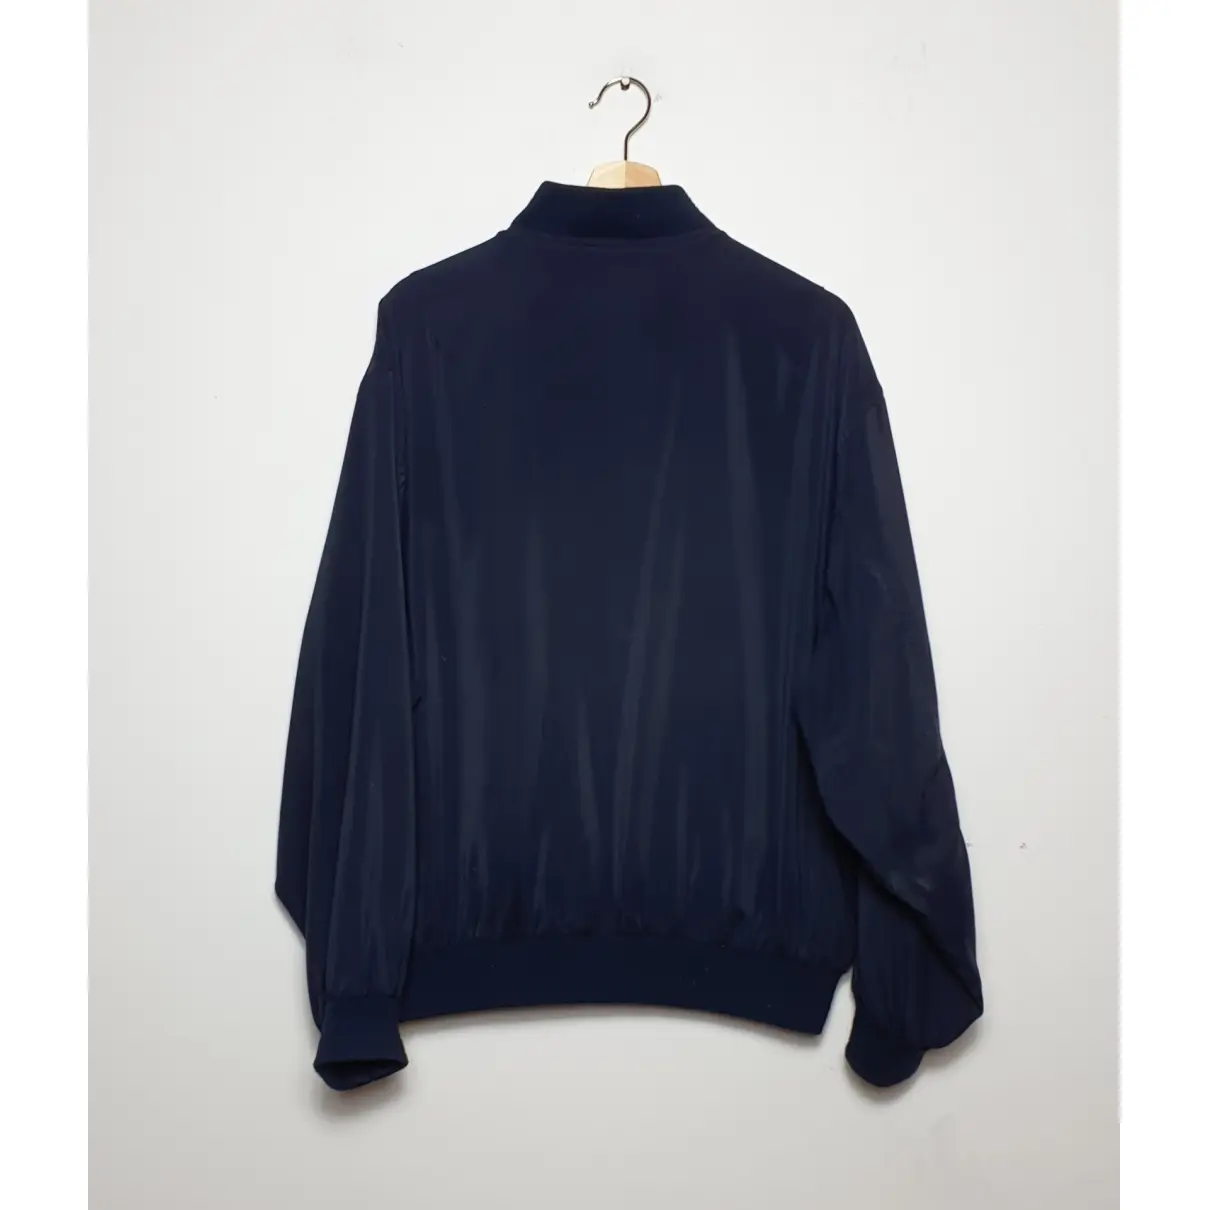 Buy Balenciaga Jacket online - Vintage